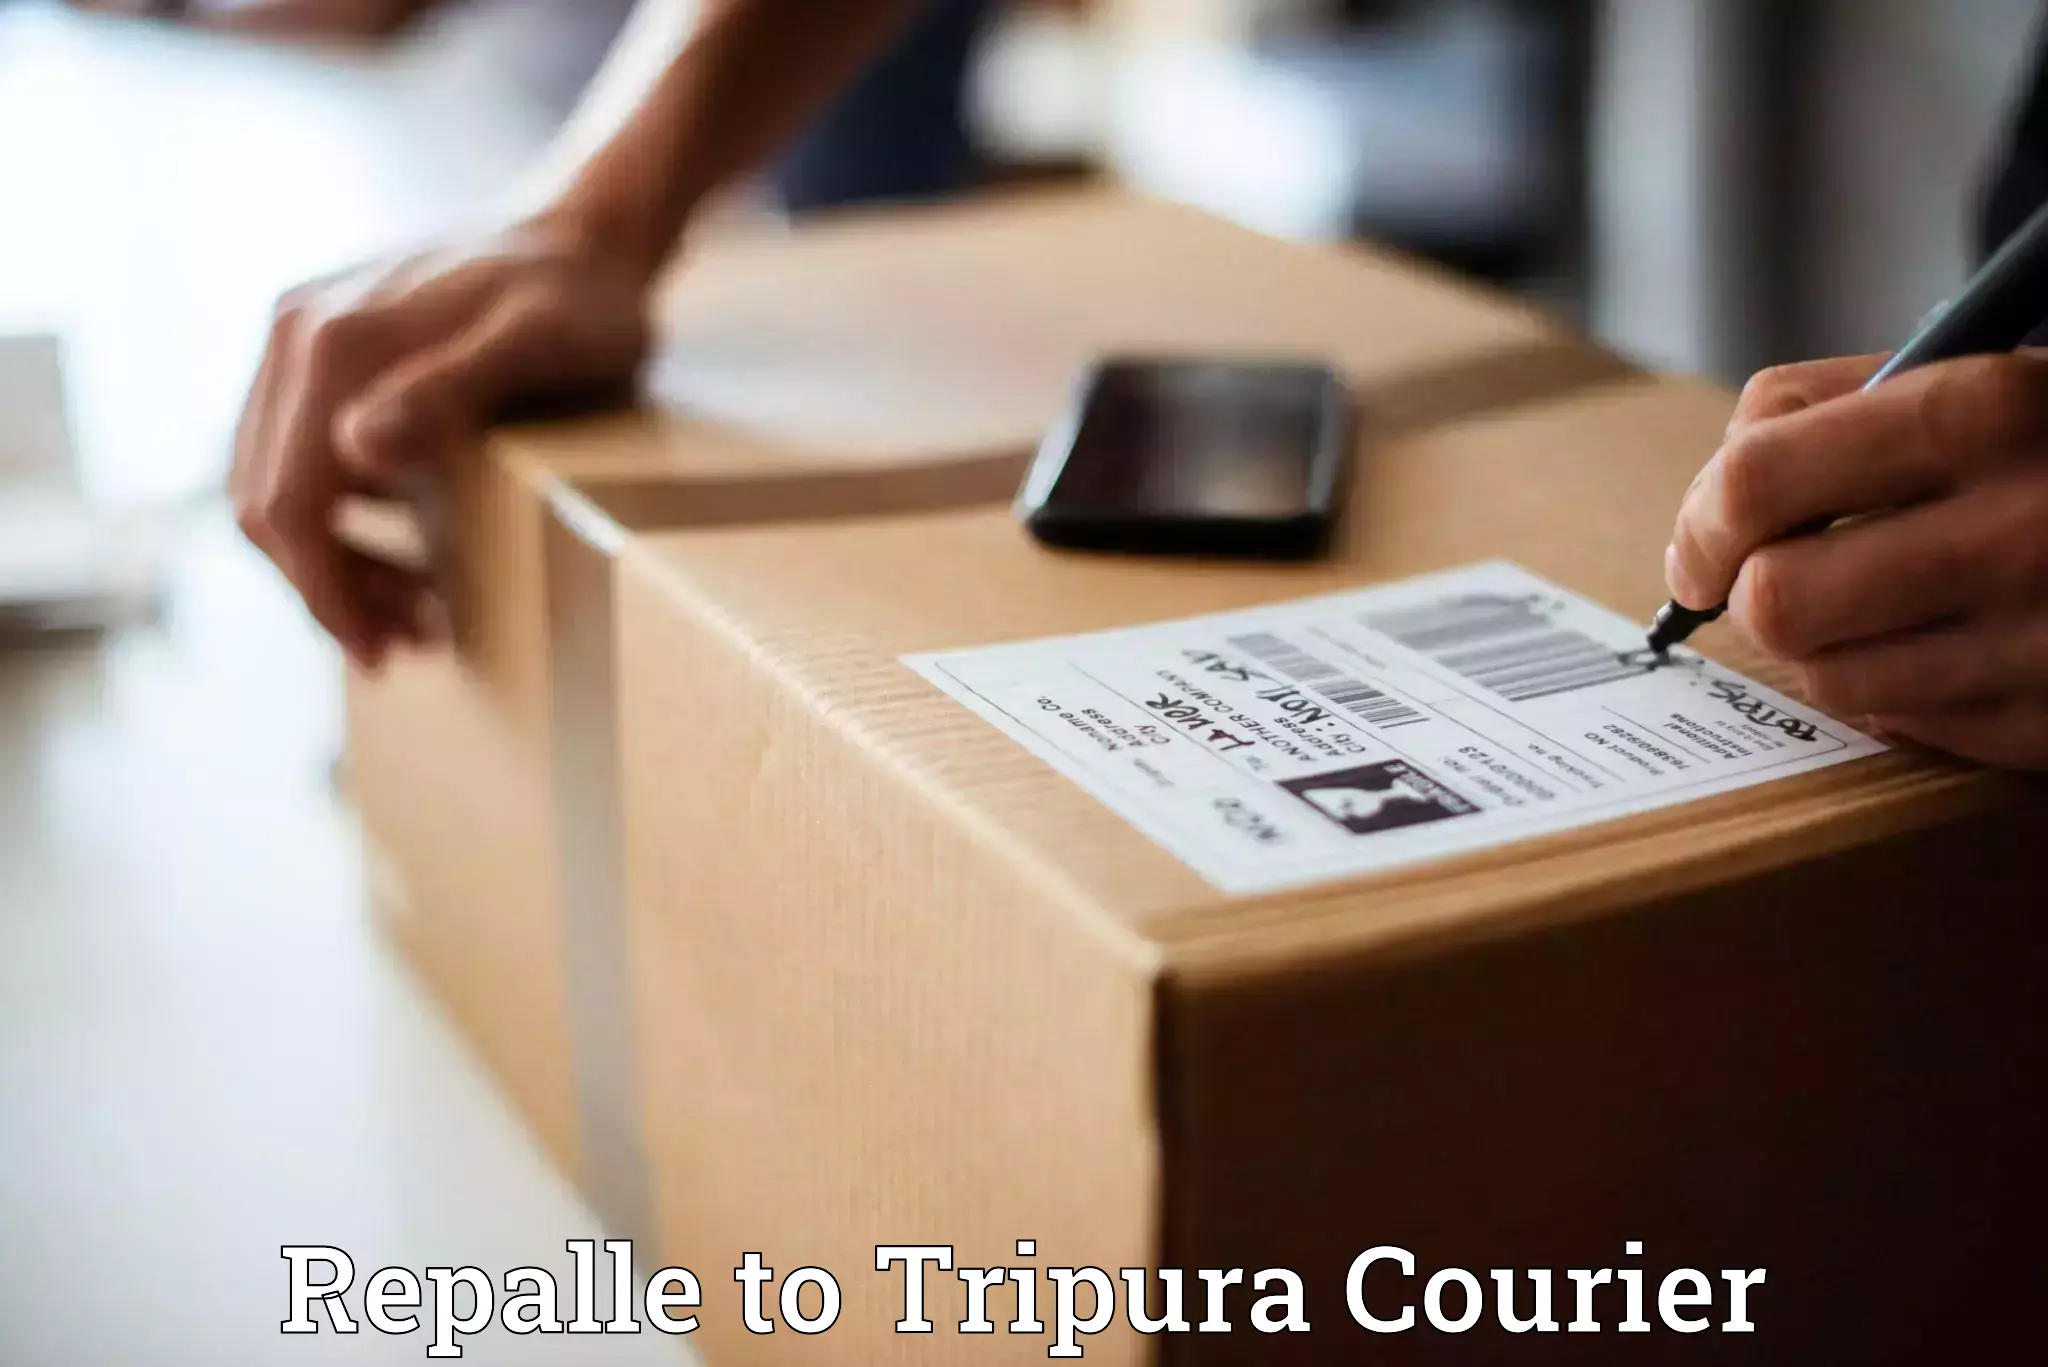 Courier service comparison Repalle to Agartala